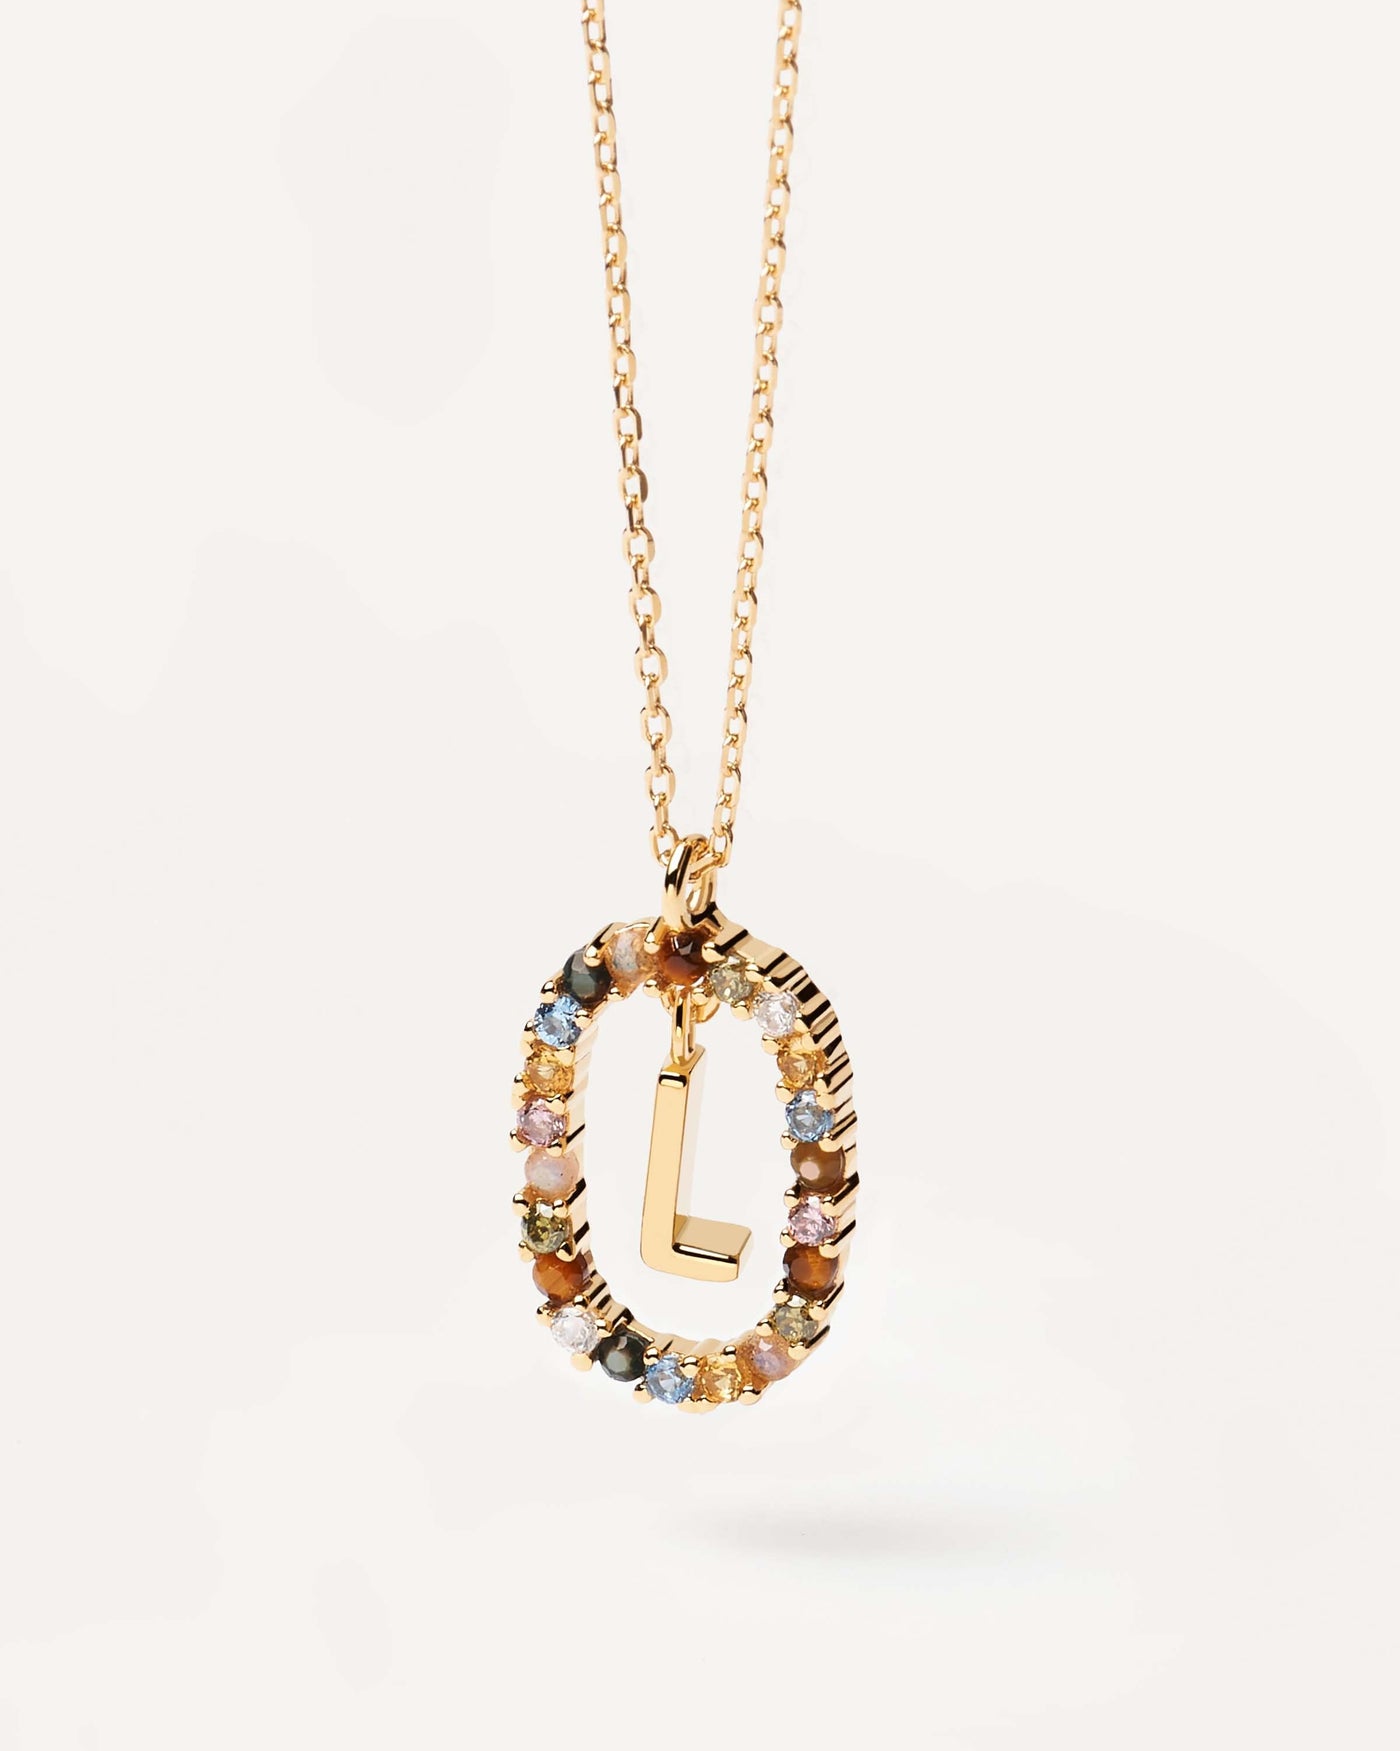 Buchstaben L Halskette. Initiale L-Halskette aus vergoldetem Silber, umgeben von bunten Edelsteinen. Erhalten Sie die neuesten Produkte von PDPAOLA. Geben Sie Ihre Bestellung sicher auf und erhalten Sie diesen Bestseller.